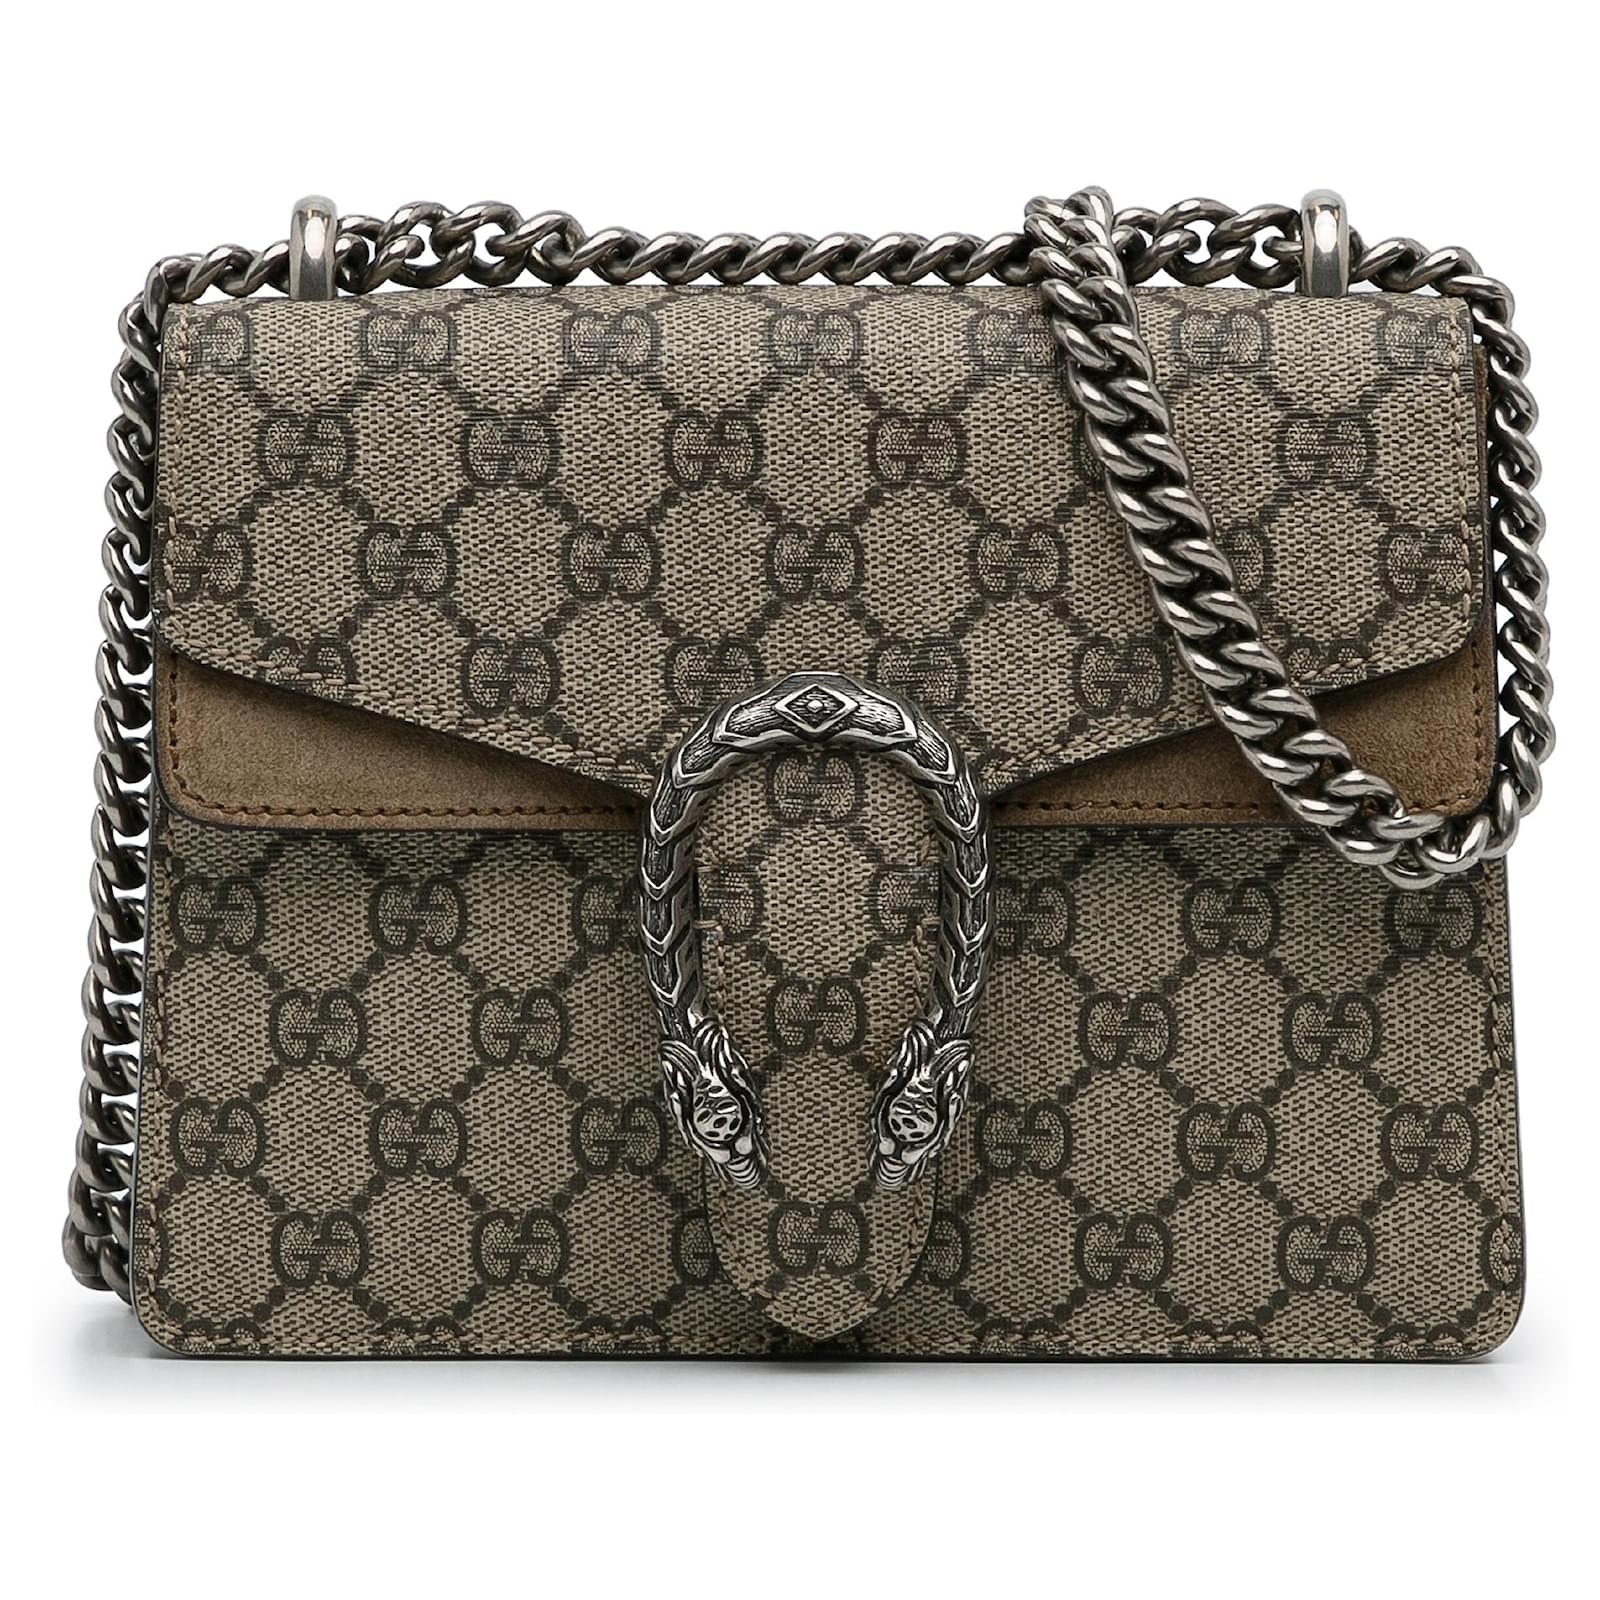 Gucci Diaper Bag GG Supreme Beige/Ebony in Canvas with Silver-tone